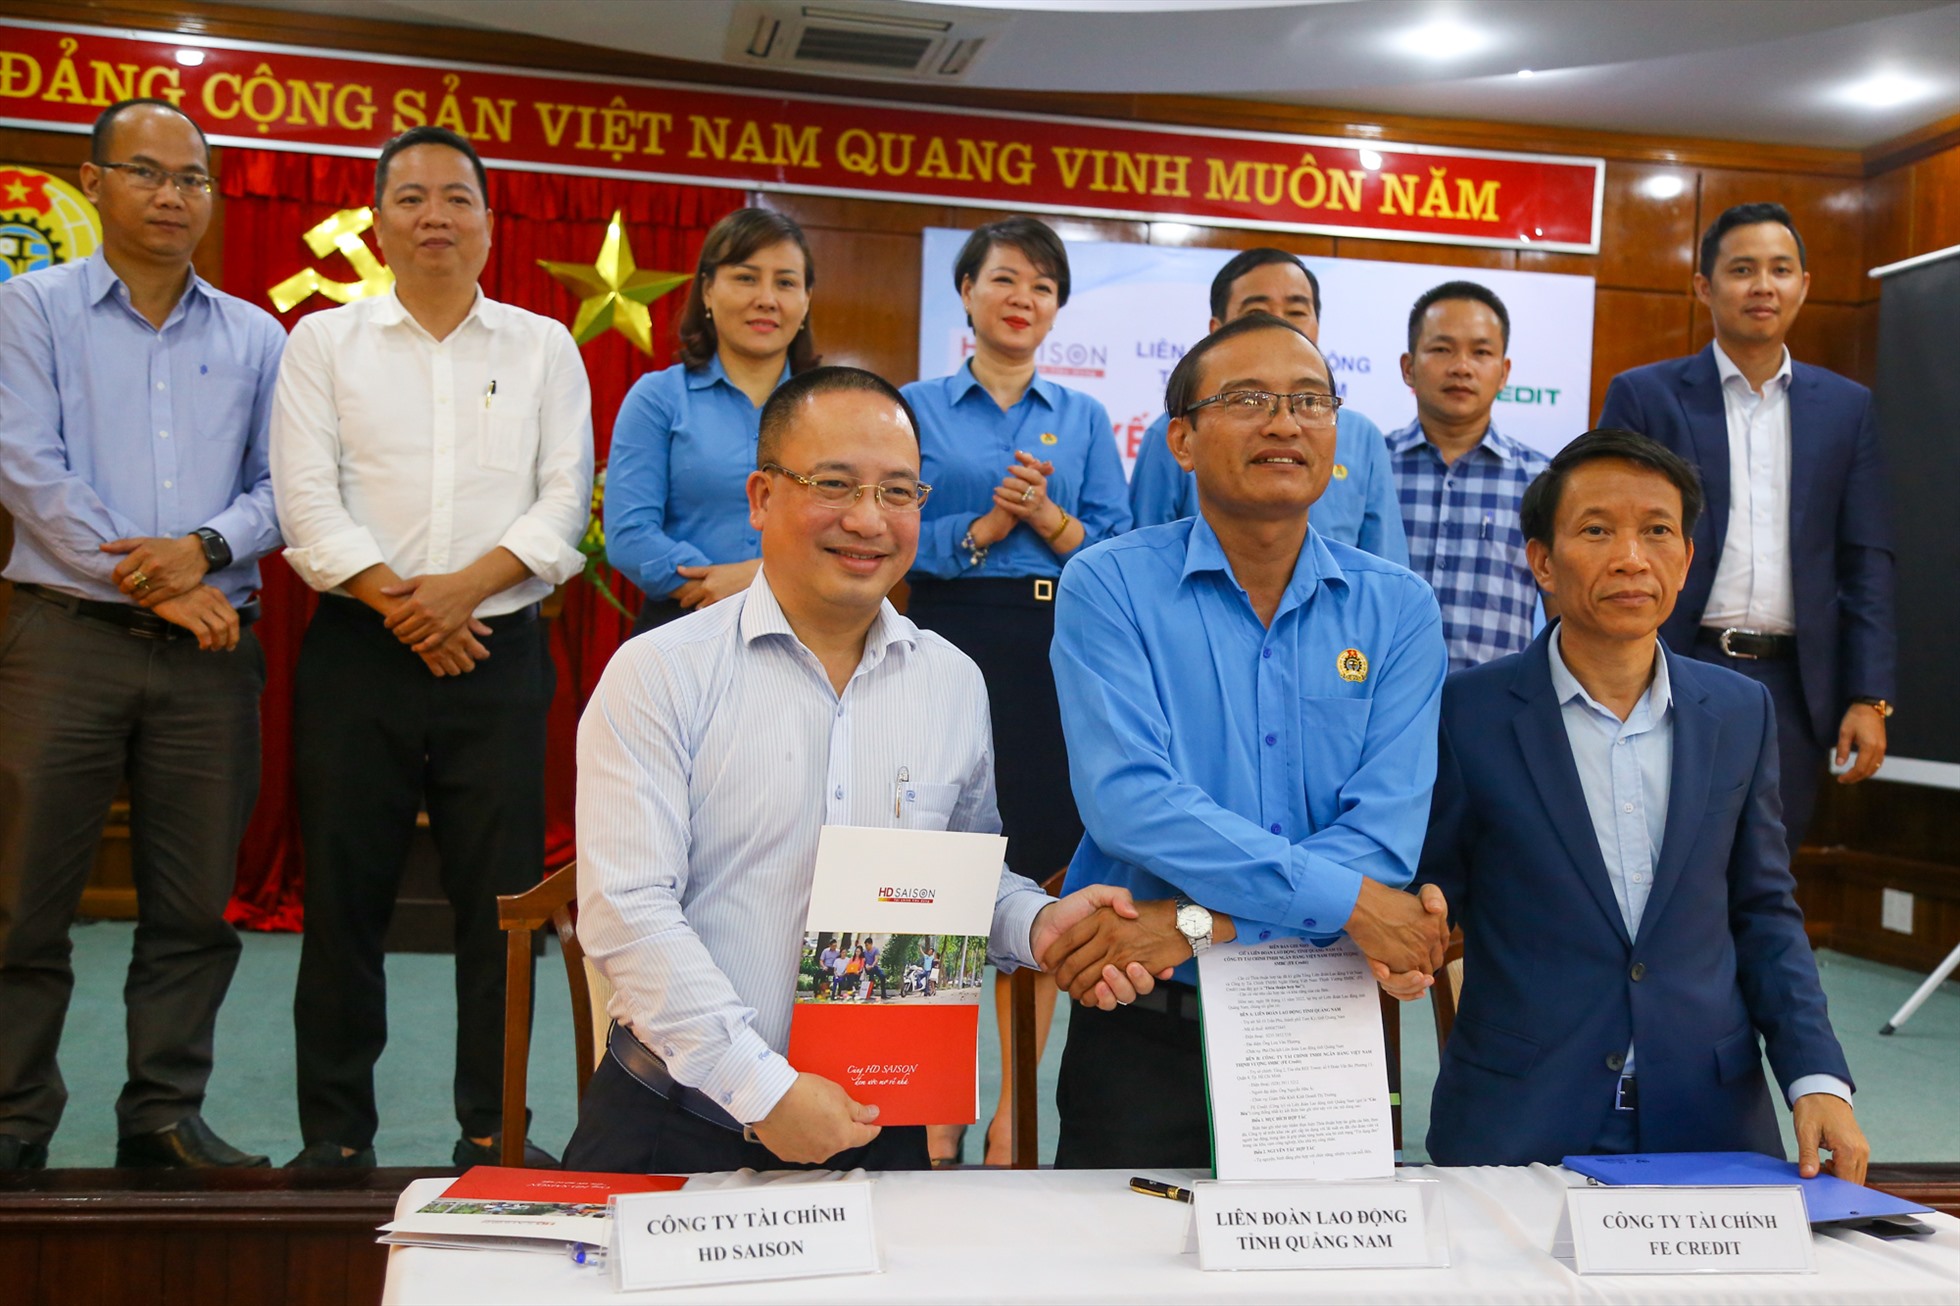 Liên đoàn Lao động tỉnh Quảng Nam ký kết biên bản ghi nhớ với 2 công ty tài chính triển khai gói vay tiêu dùng cho người lao động. Ảnh: Văn Trực